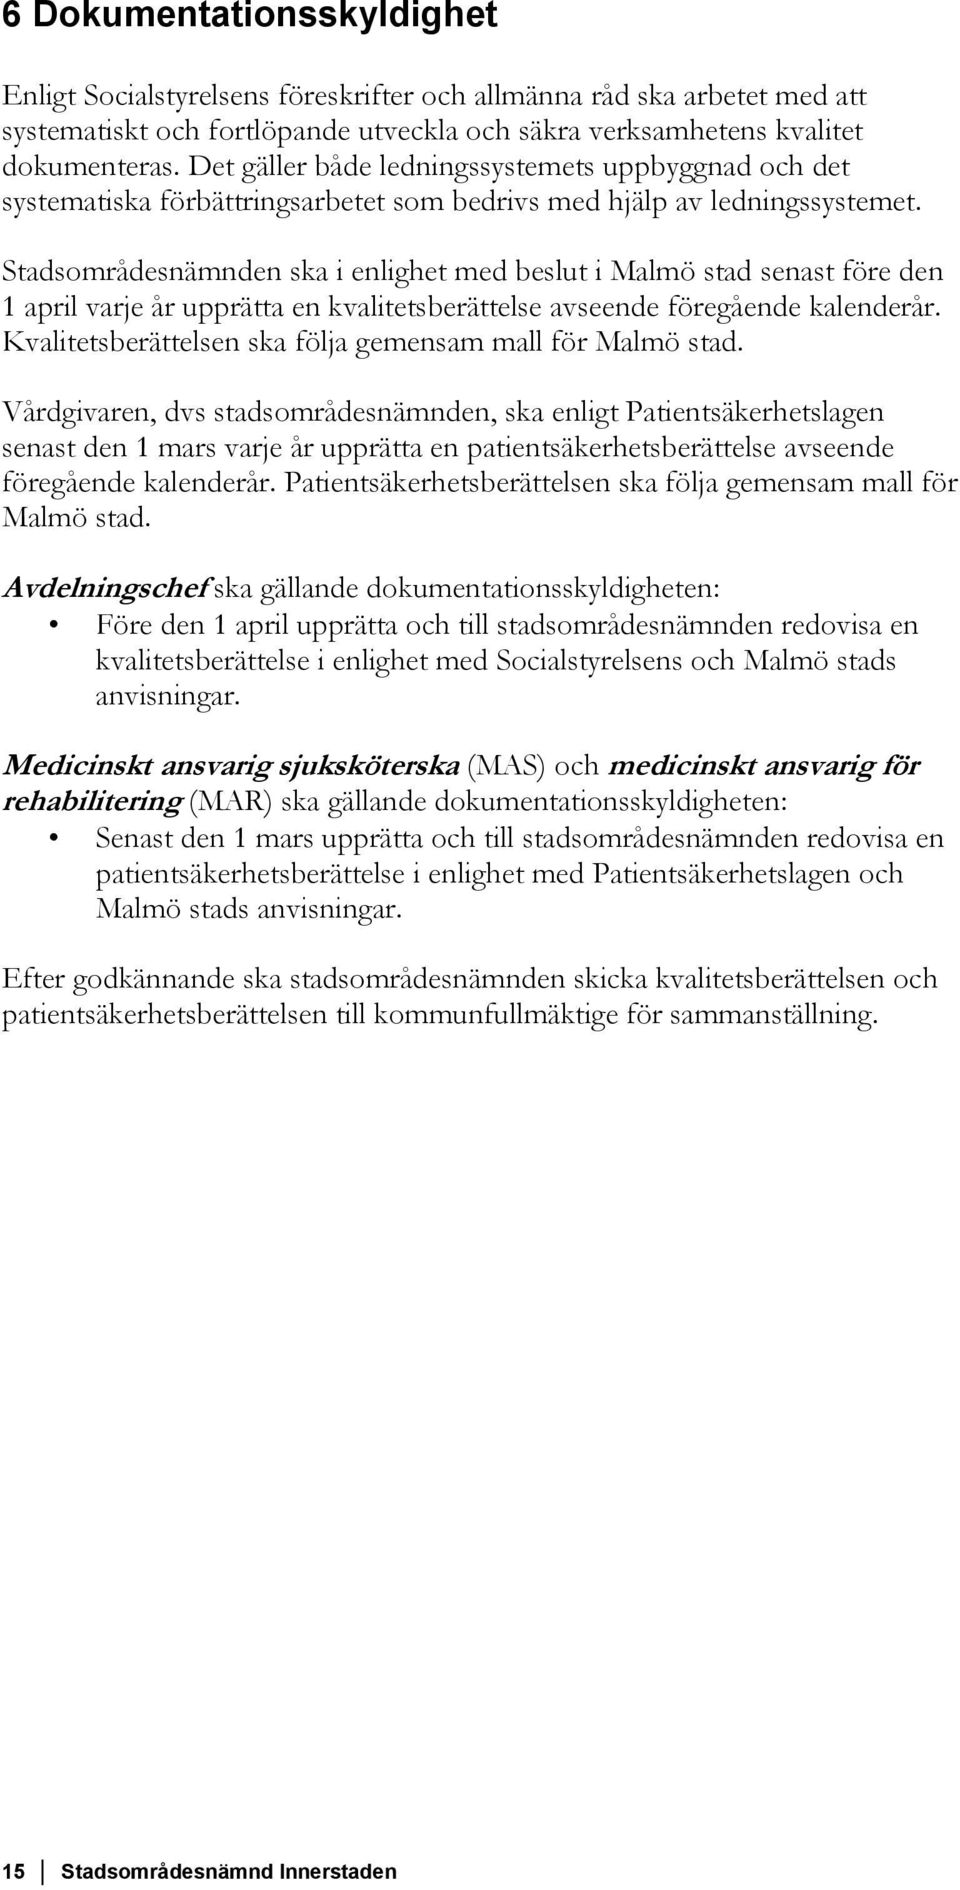 Stadsområdesnämnden ska i enlighet med beslut i Malmö stad senast före den 1 april varje år upprätta en kvalitetsberättelse avseende föregående kalenderår.